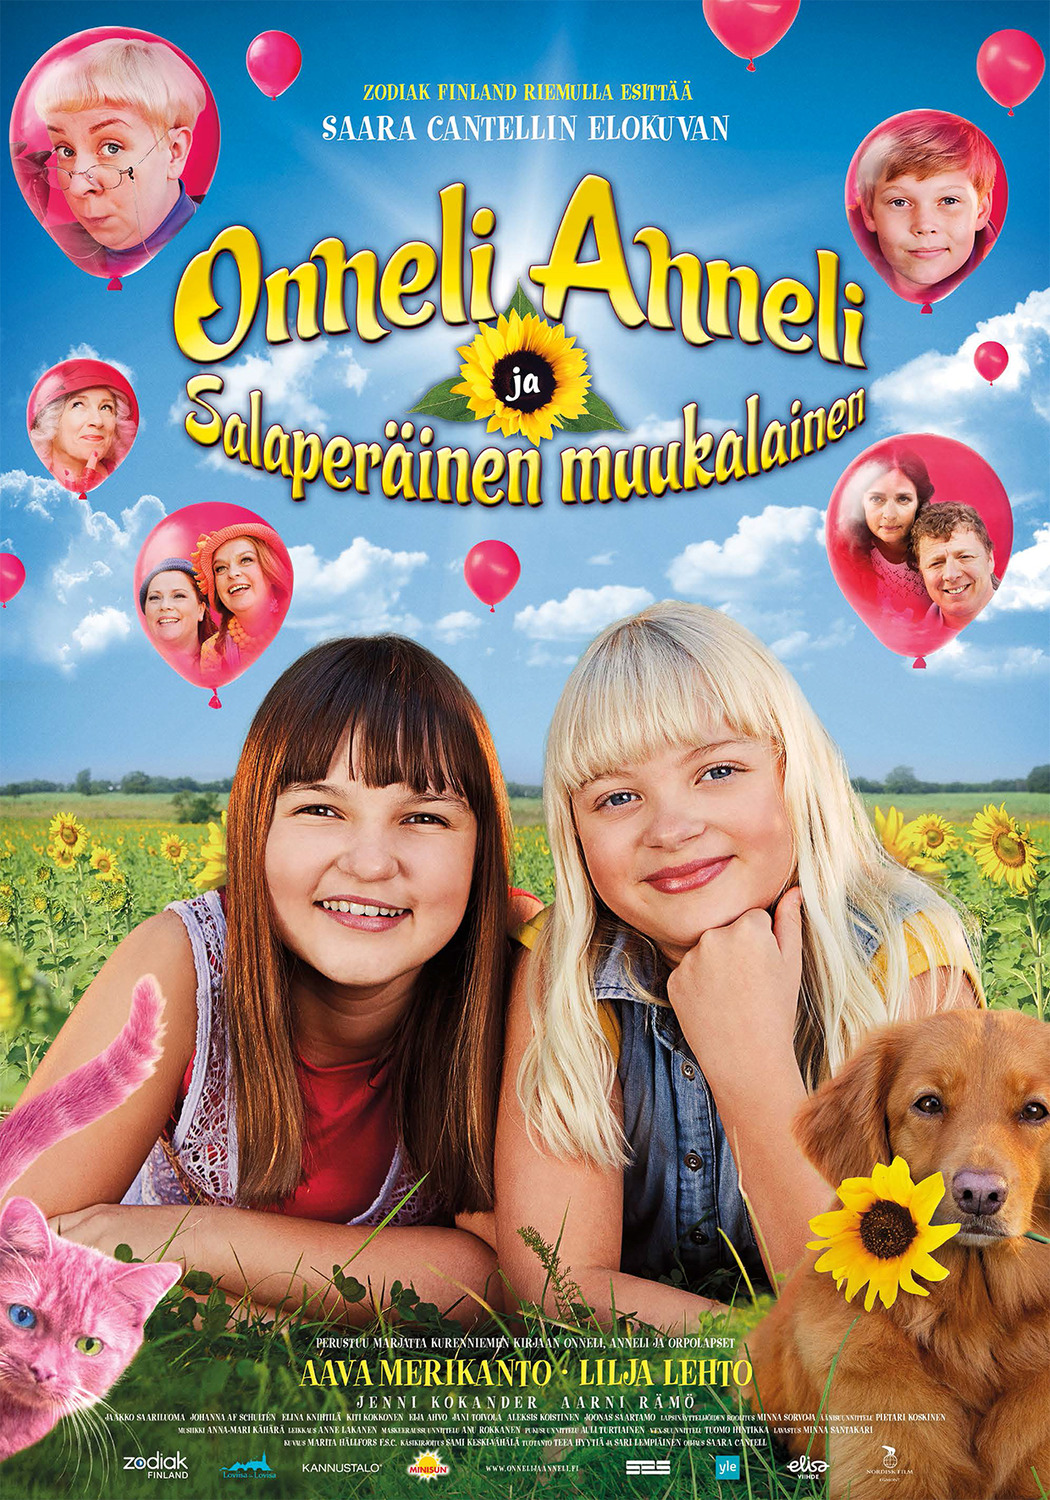 Extra Large Movie Poster Image for Onneli, Anneli ja Salaperäinen muukalainen 